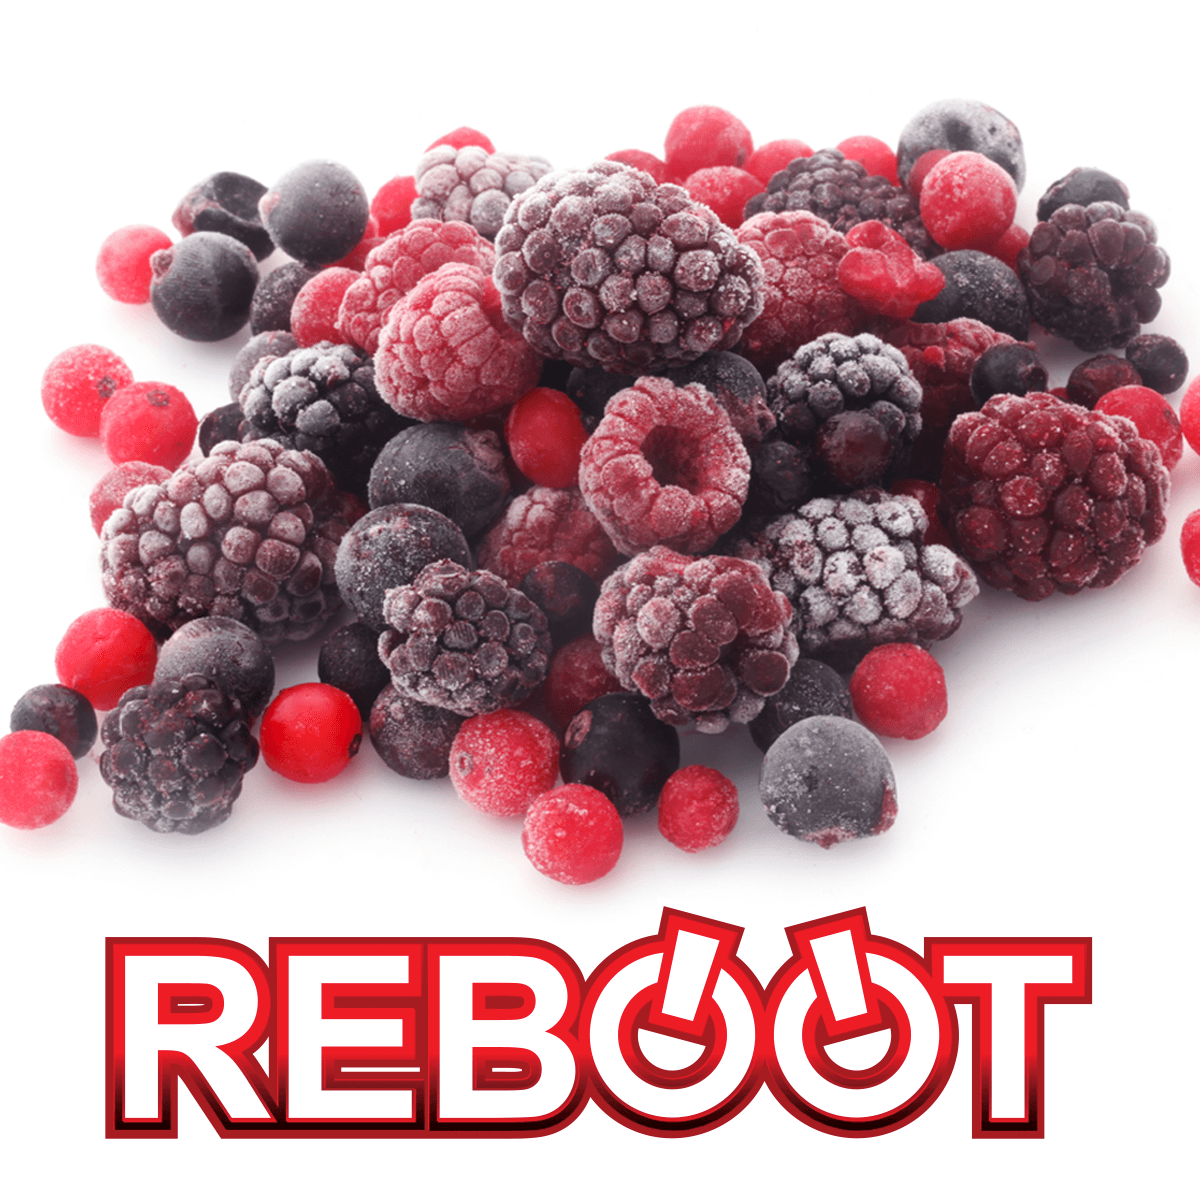 Frozen Berries - Reboot - The Vape Store